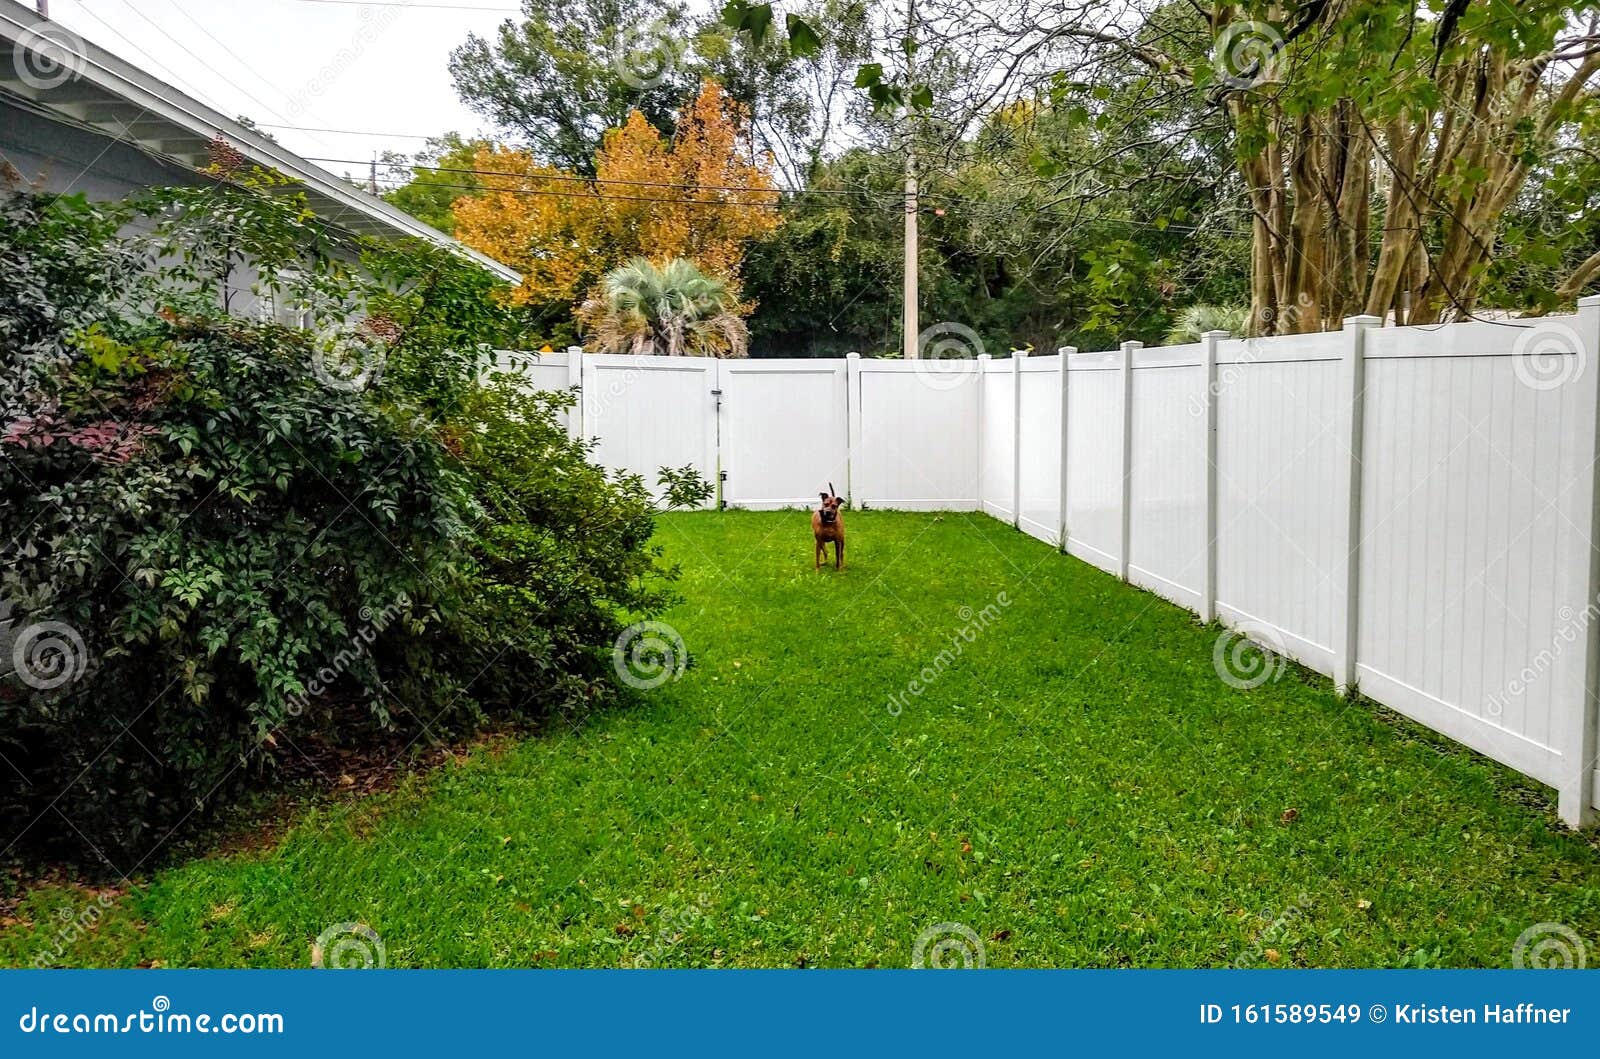 Dog Fence Yard Play Fun Green Florida Trees What Look Cute Fun Stock Image Image Of Florida Yard 161589549